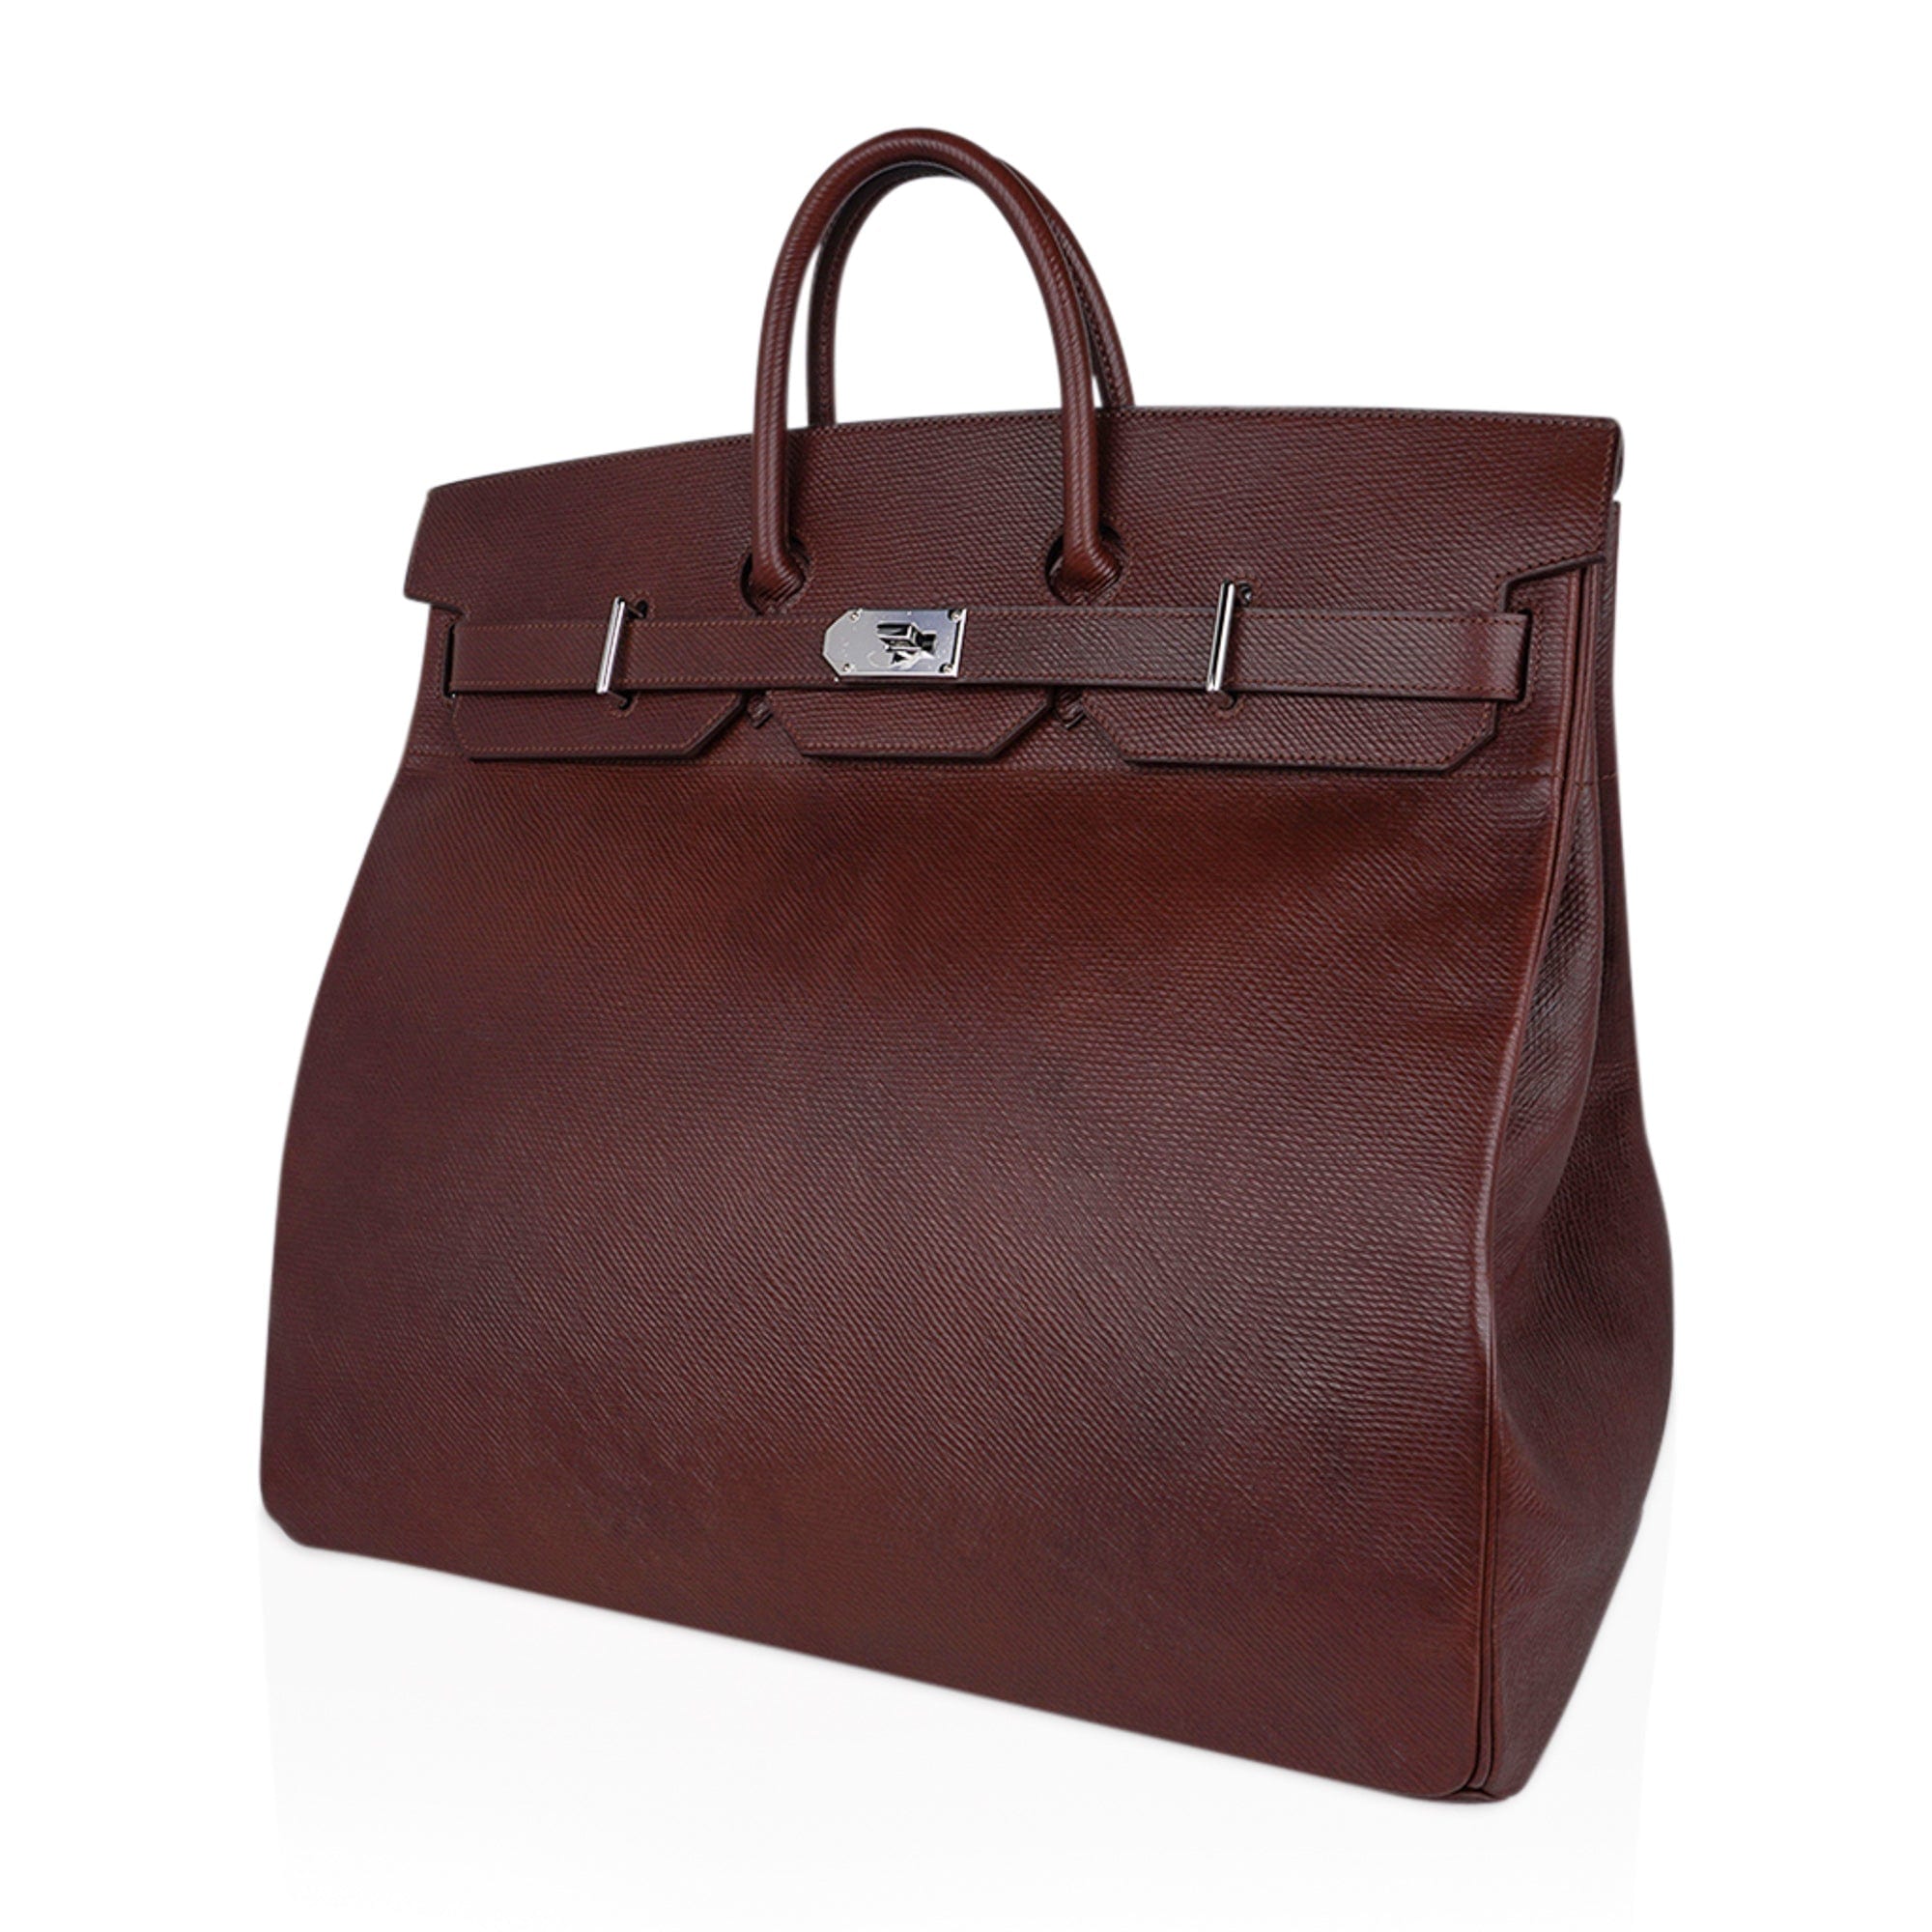 Hermes Bag Charms Reference Guide  Hermes handbags, Handbag charms, Bags